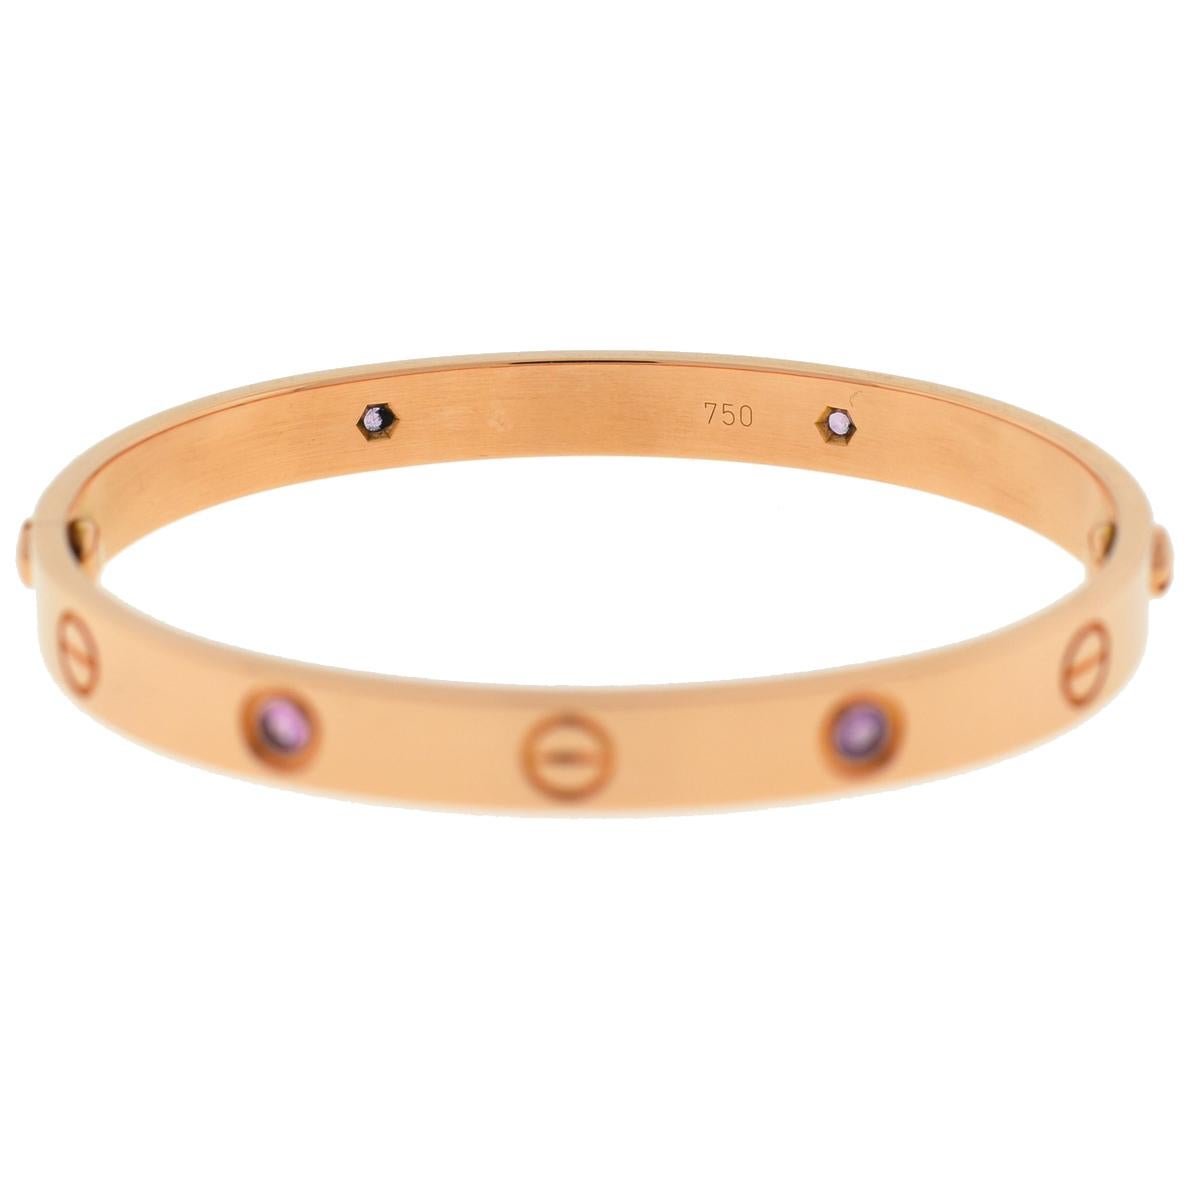 cartier love bracelet pink sapphire